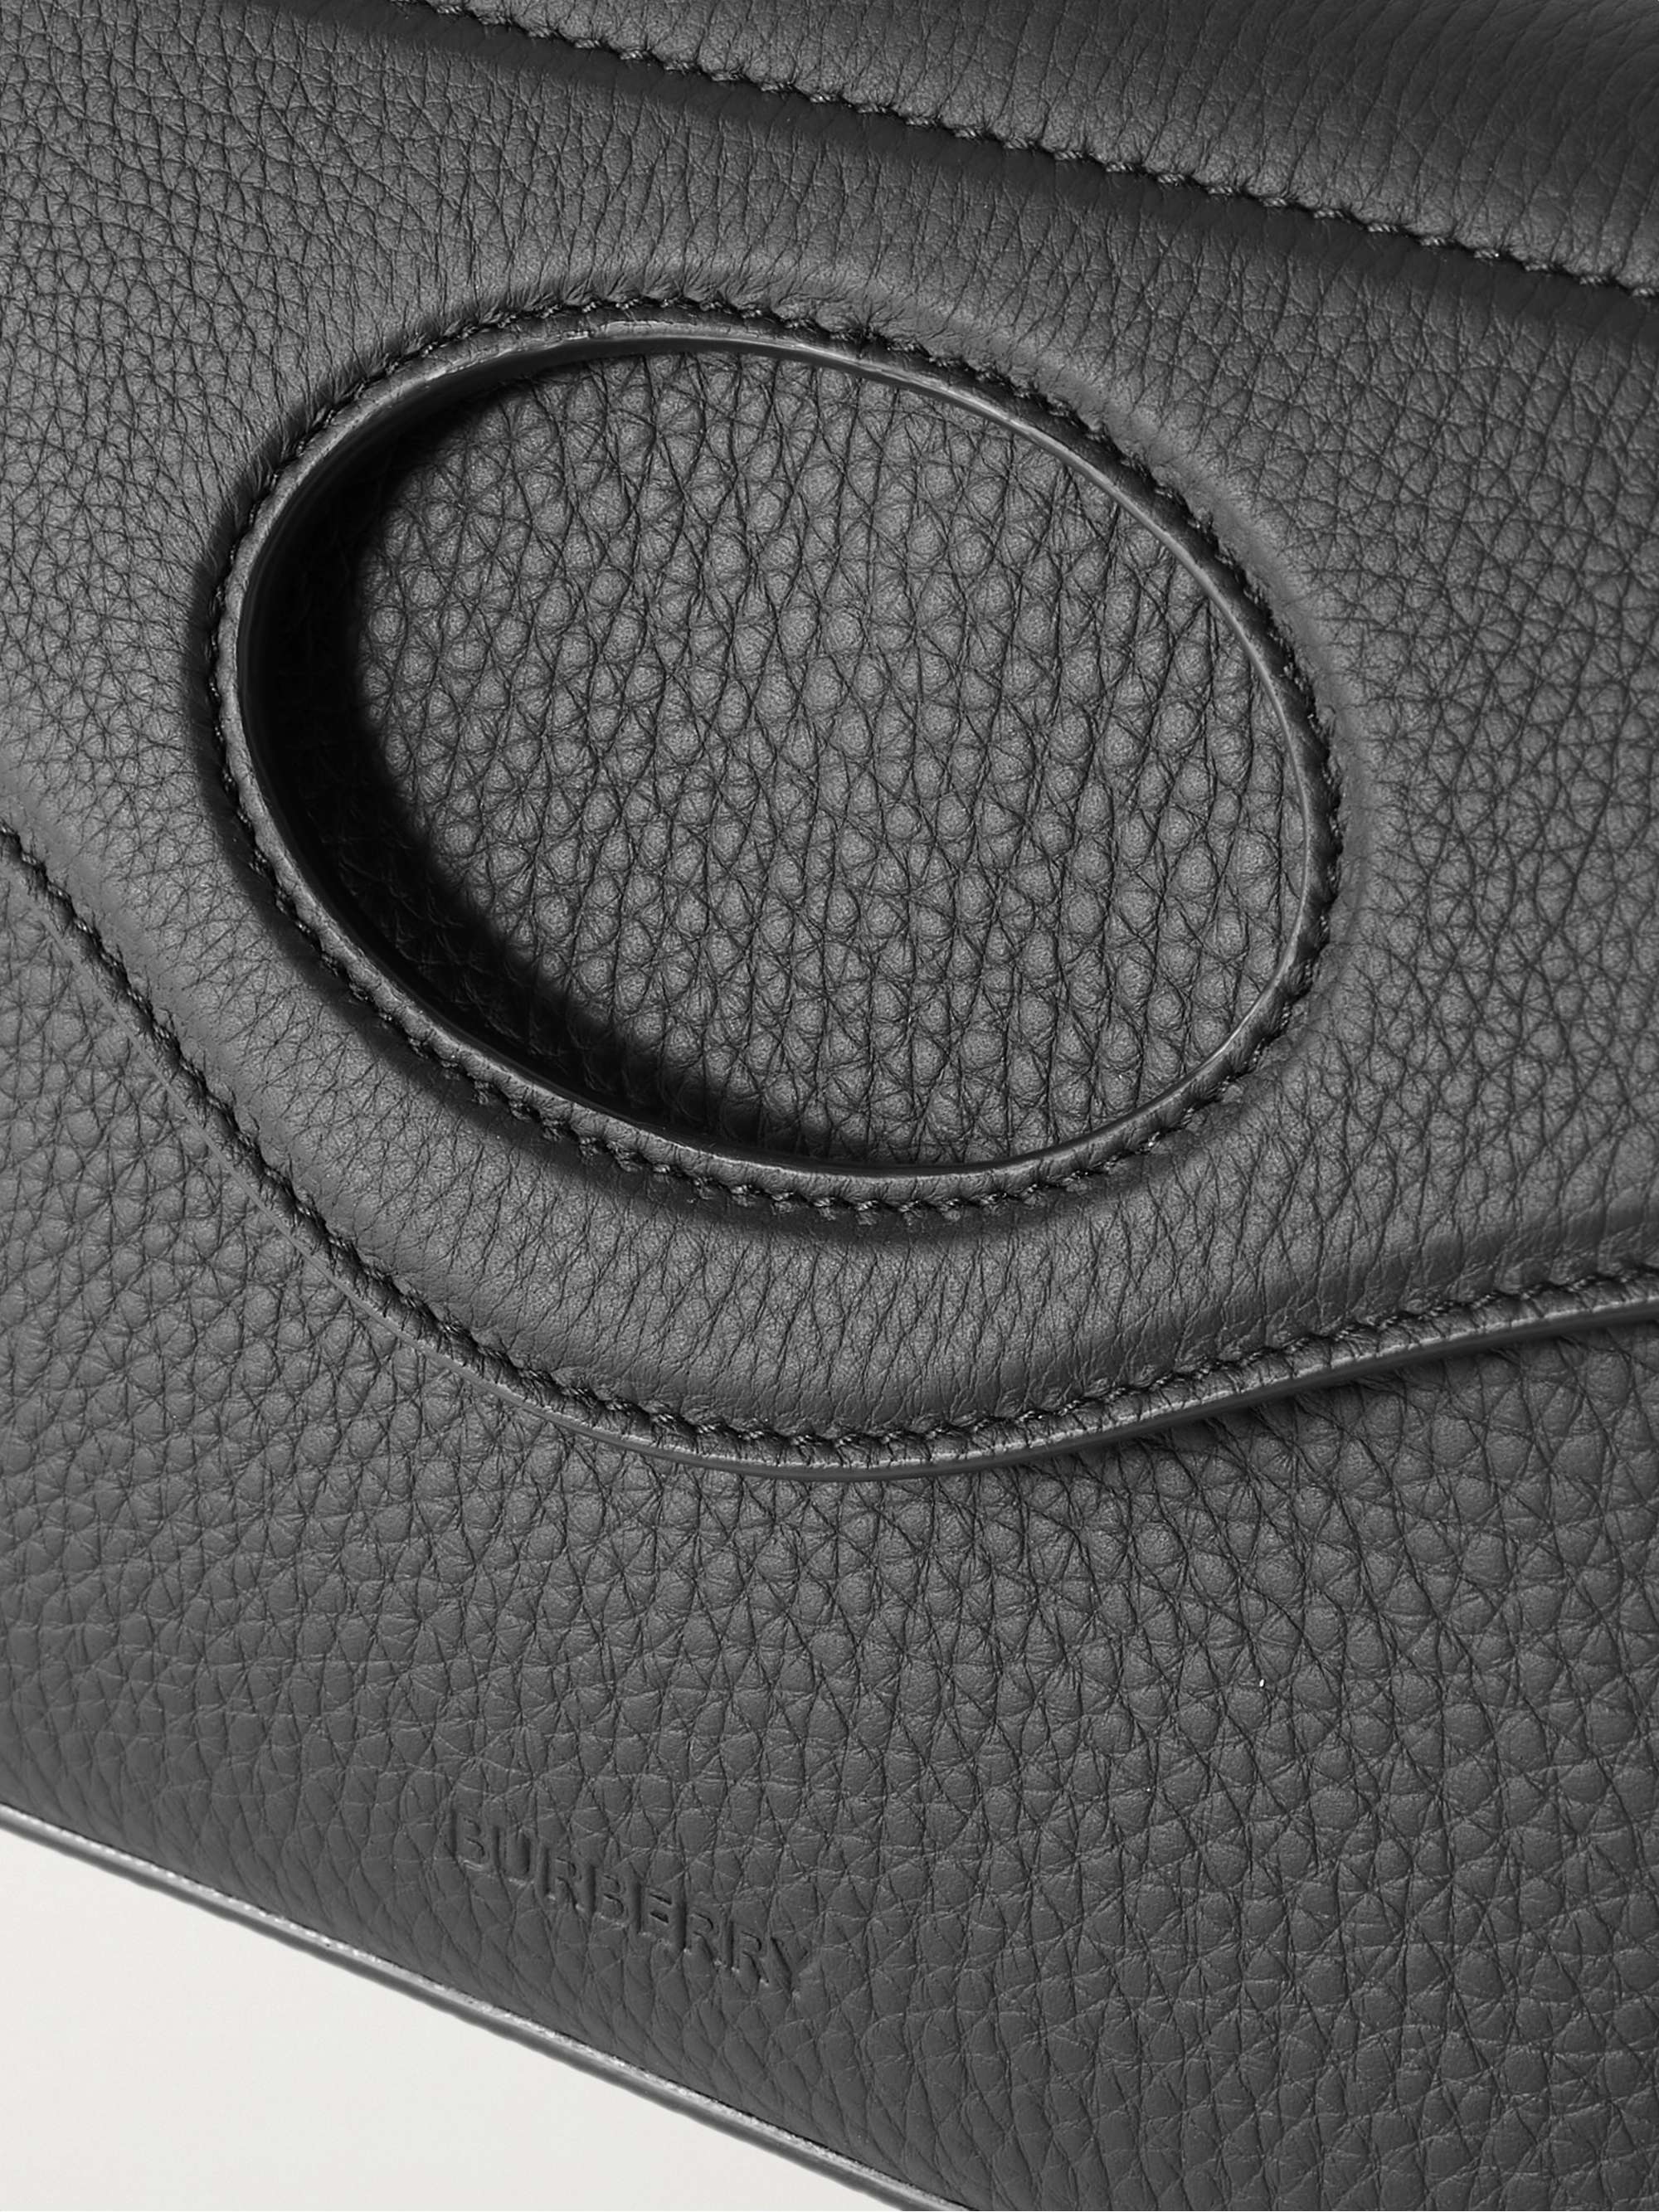 BURBERRY Full-Grain Leather Belt Bag